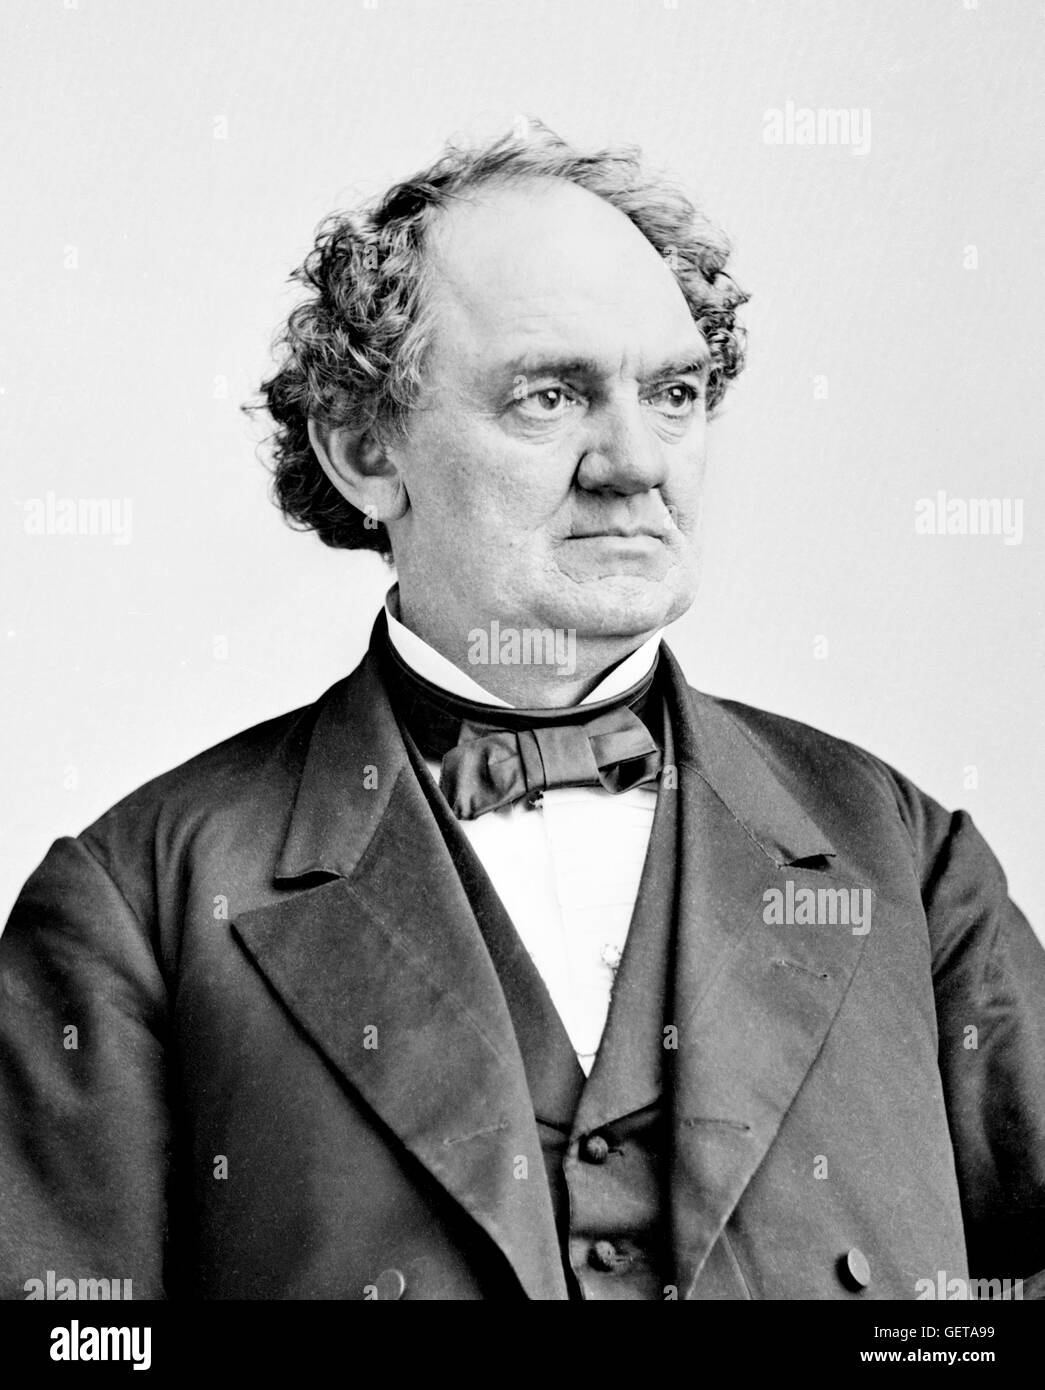 P T Barnum. Portrait Der amerikanische Showman, Phineas Taylor Barnum (1810-1891), aus dem Brady-Handy Sammlung, c 1855-1865. PT Barnum. Stockfoto